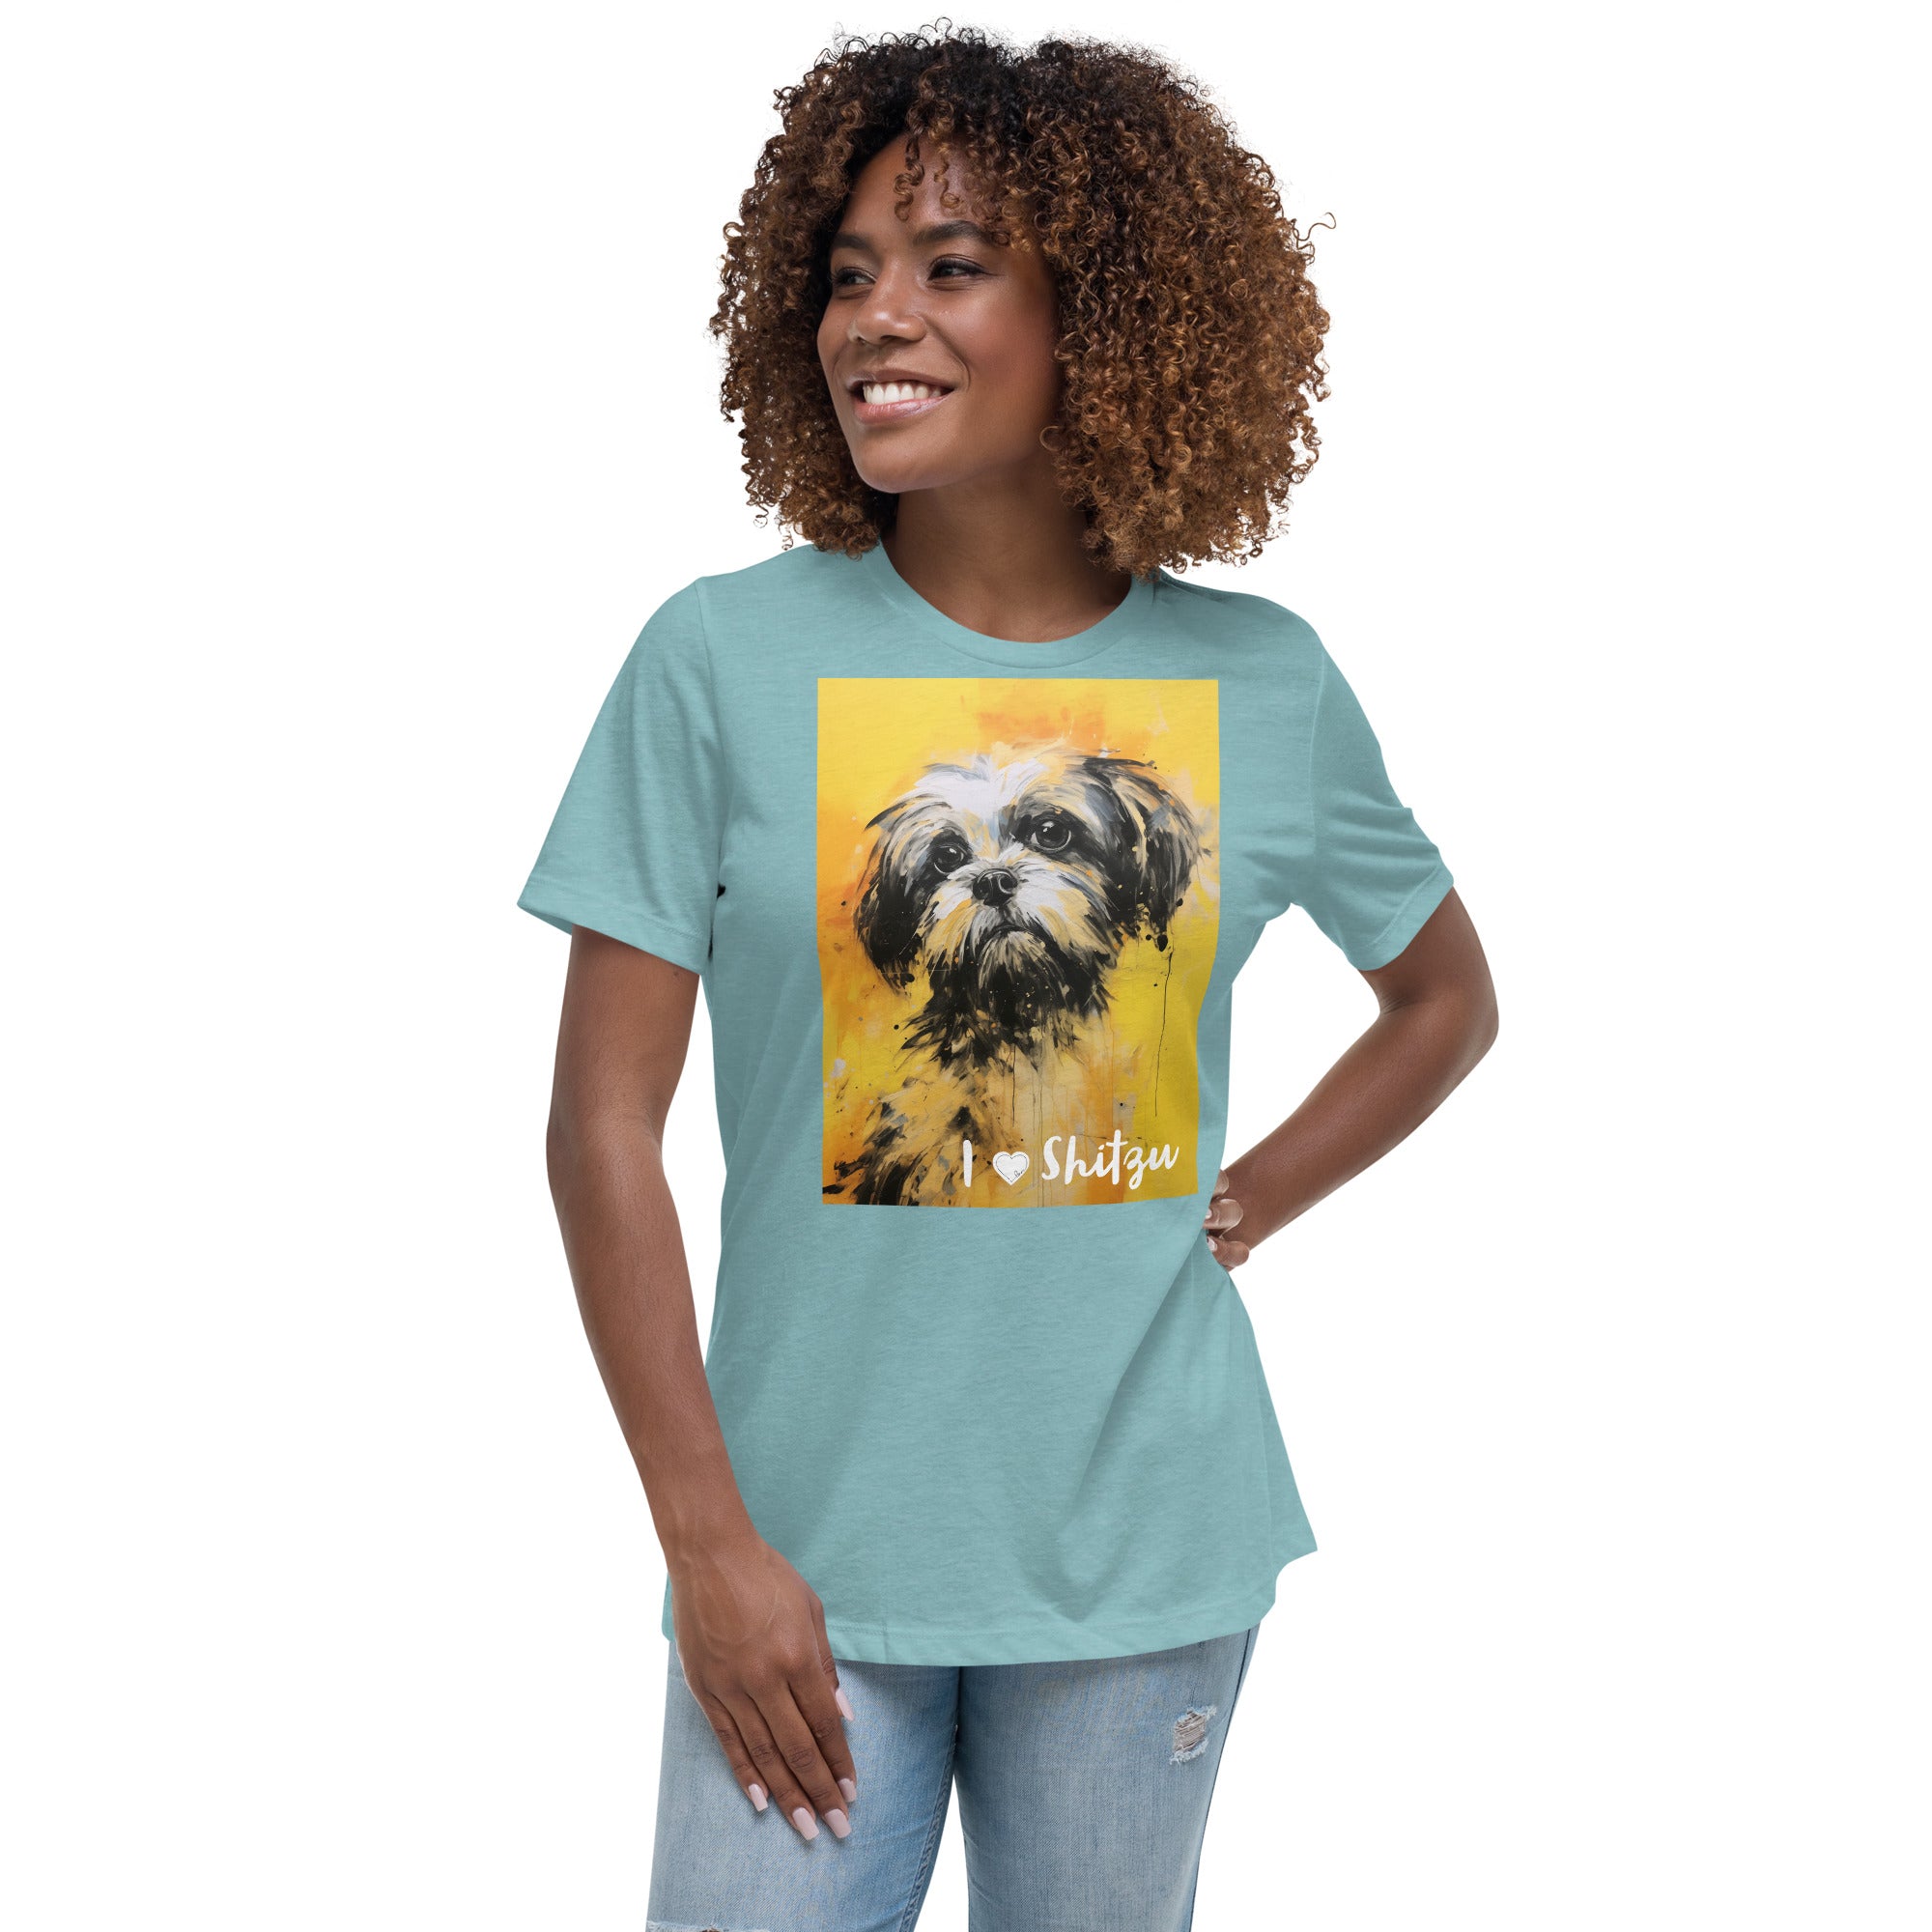 Women's Relaxed T-Shirt - I ❤ Dogs - Shih Tzu